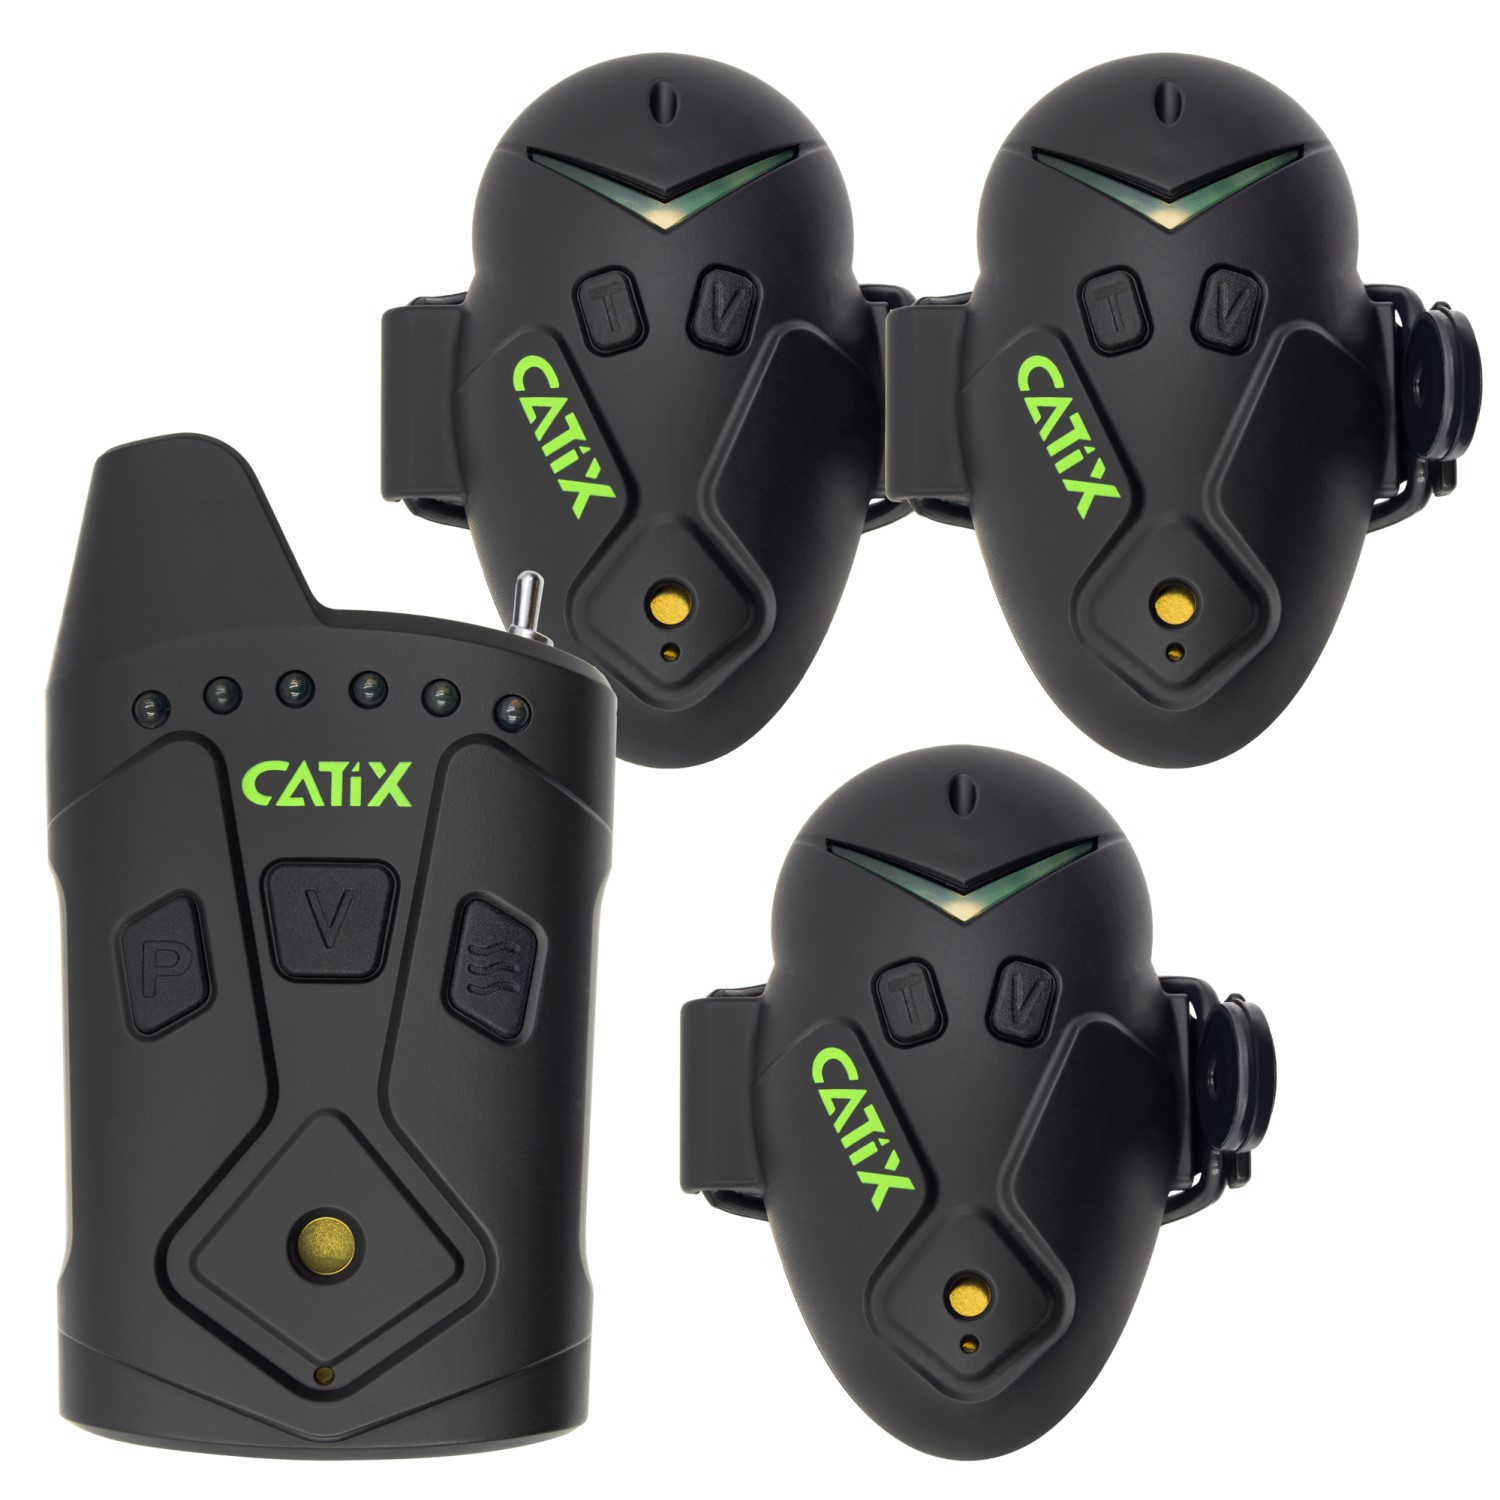 Catix XP8 Meerval Beetverklikkers set van 3 in koffer